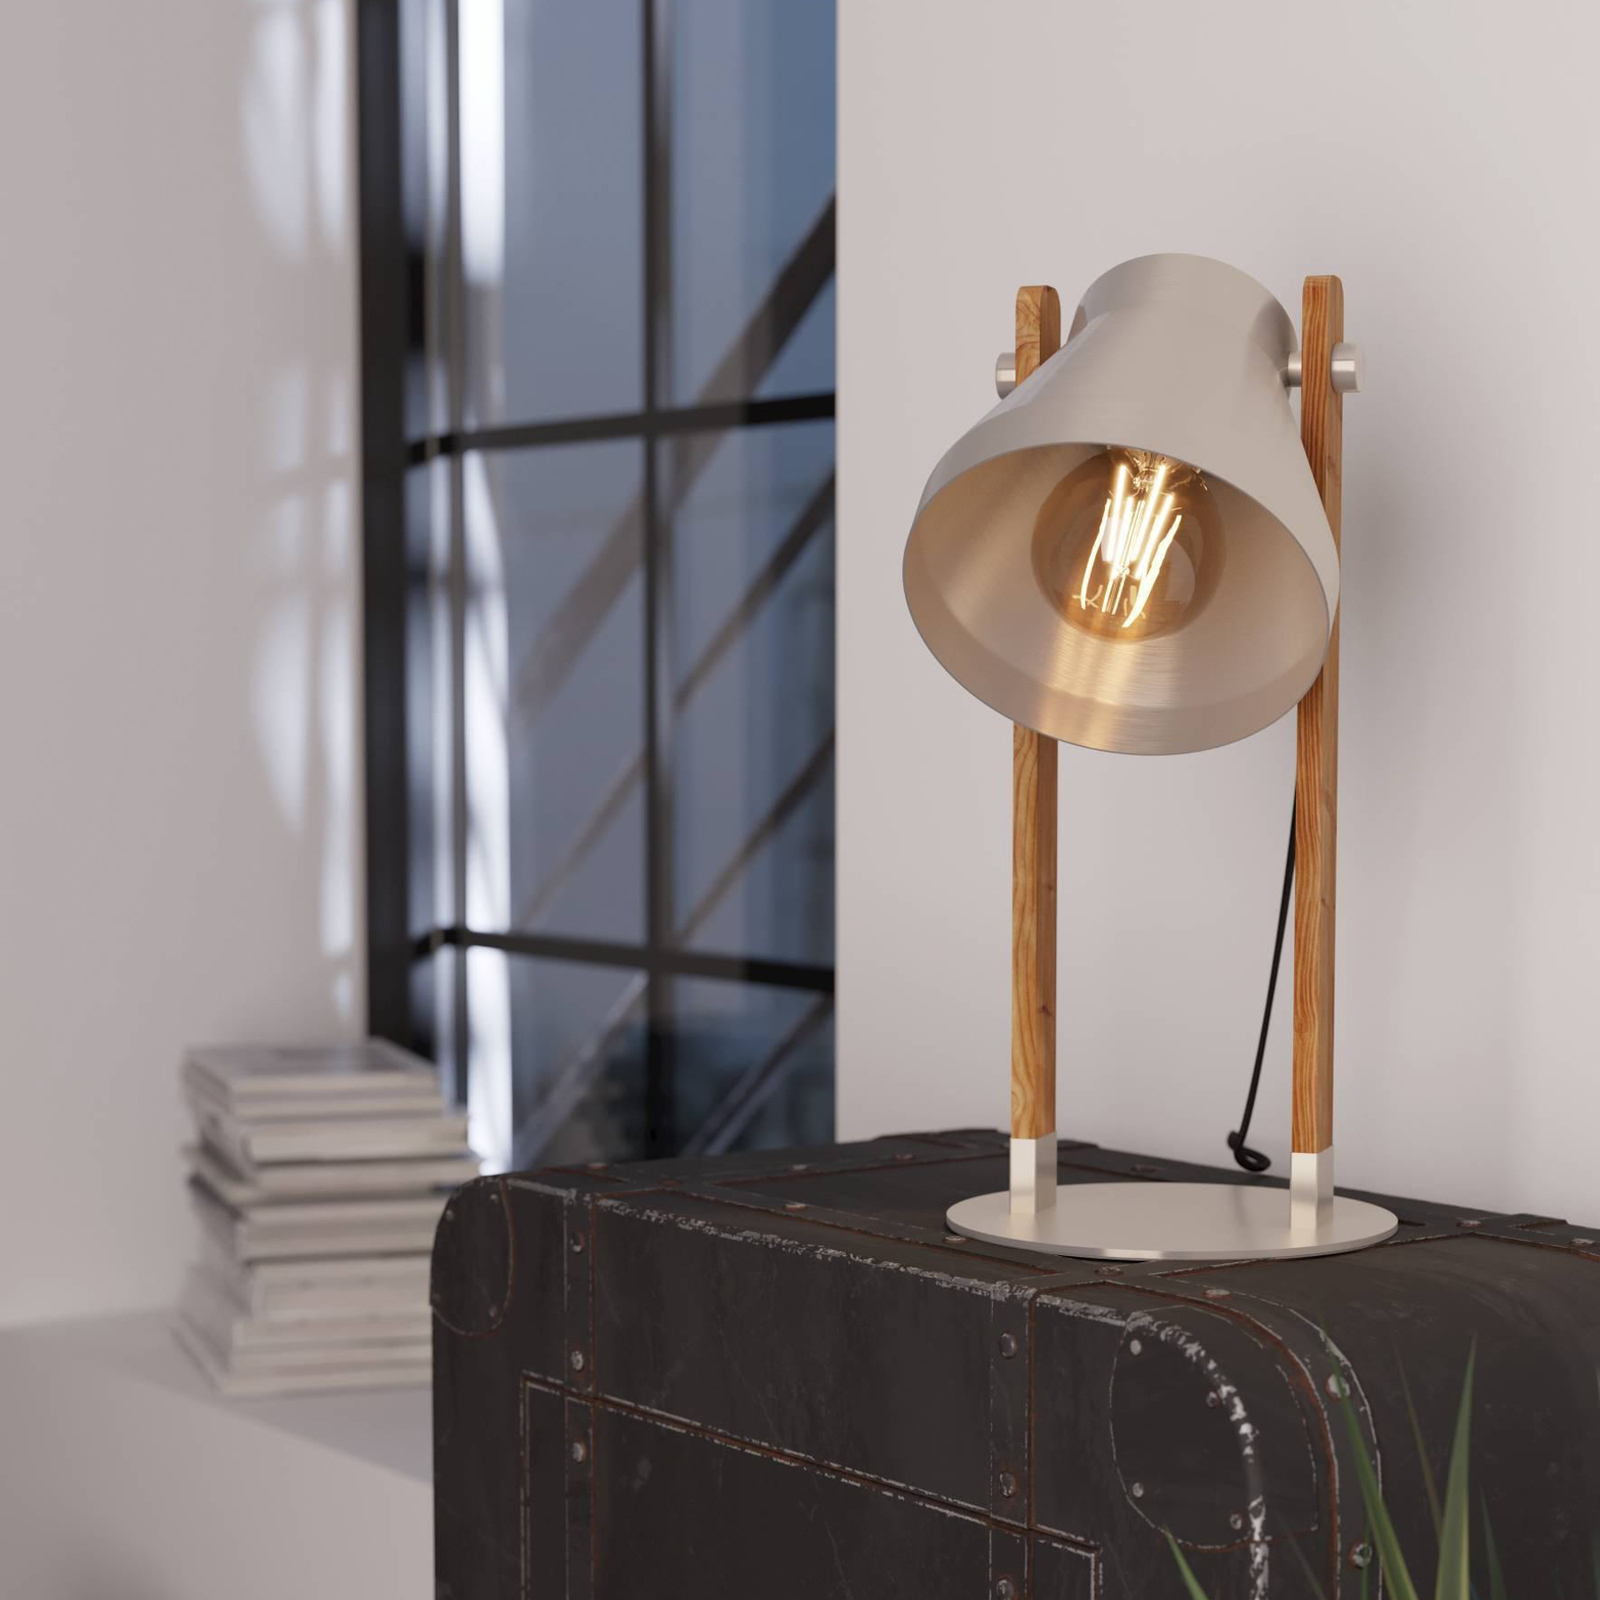 Настолна лампа Cawton, височина 38 cm, стомана/кафяв цвят, стомана/дърво